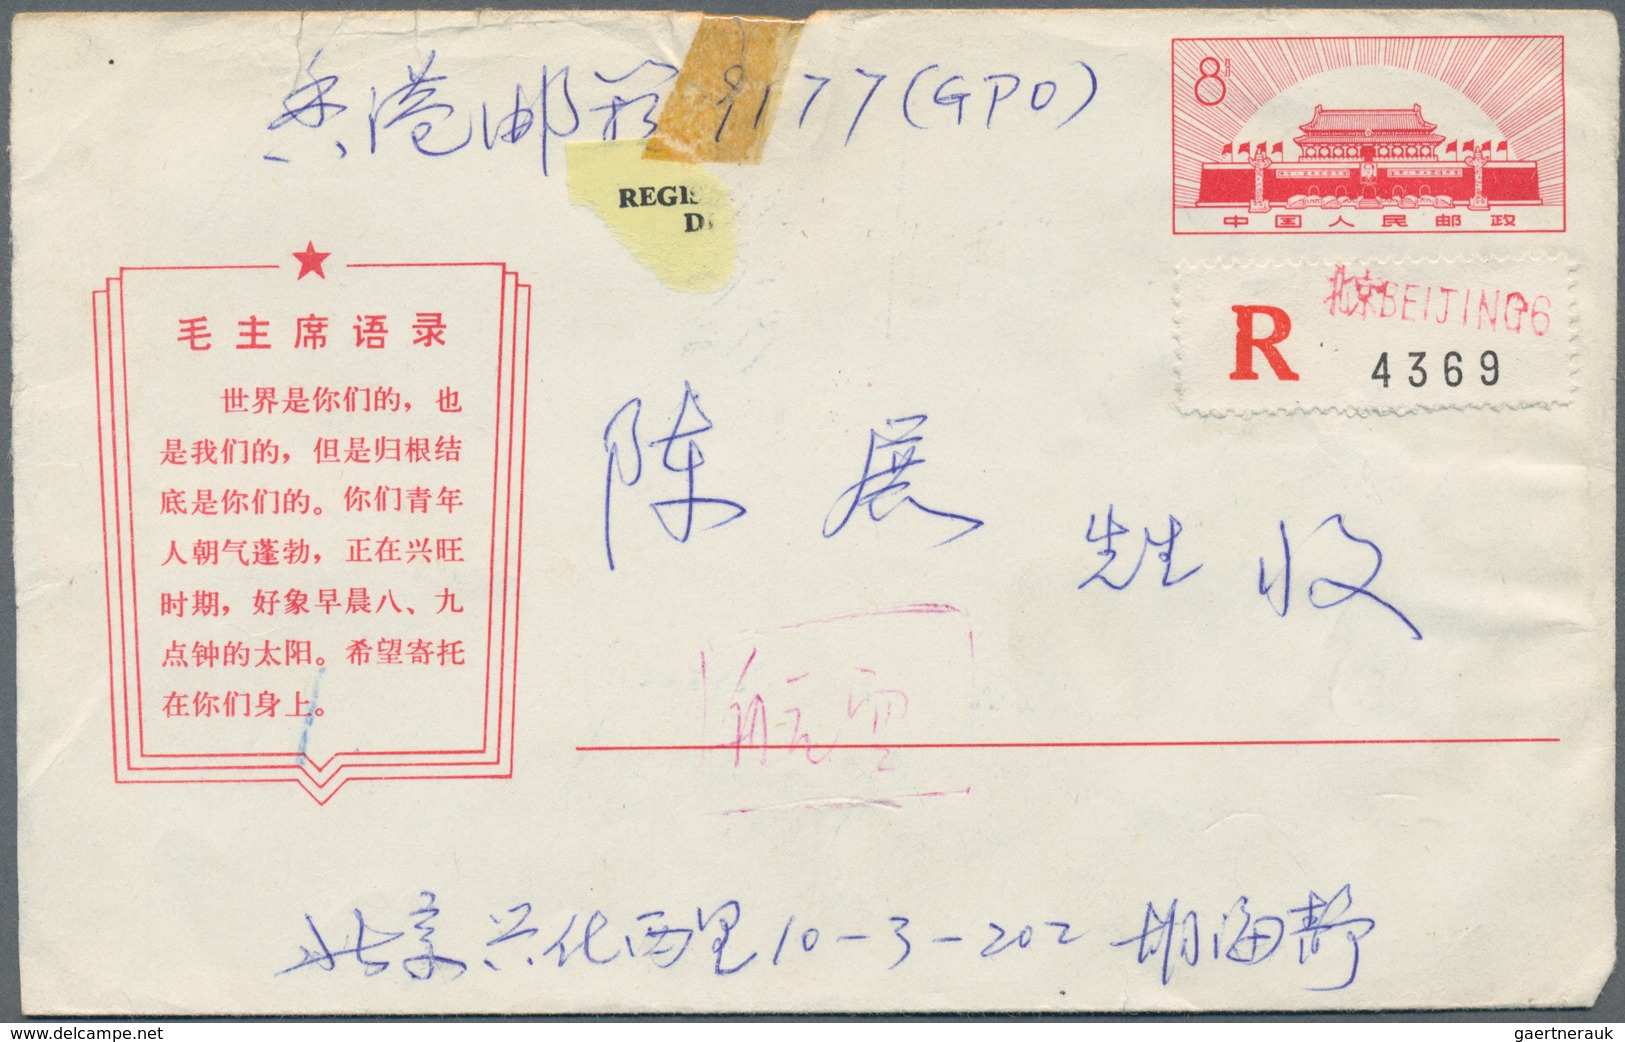 China - Volksrepublik - Ganzsachen: 1967, Cultural Revolution Stationery Envelopes With Slogans, A C - Cartes Postales